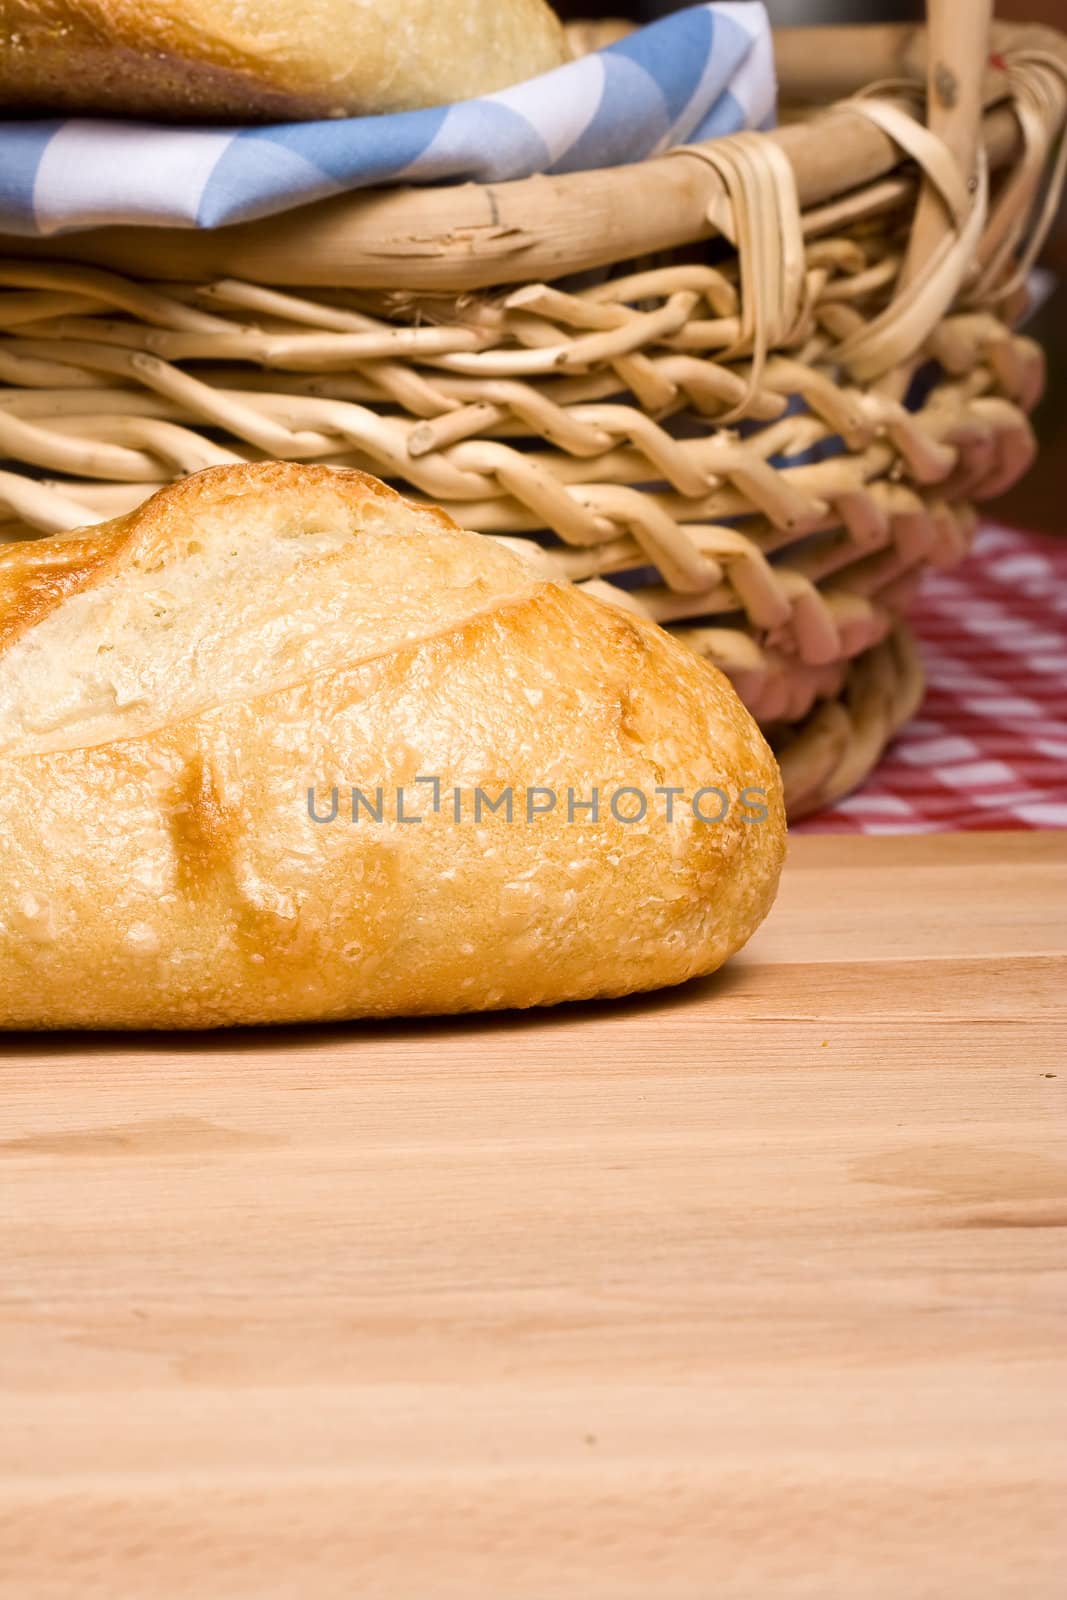 freshly baked golden bread ready for some butter